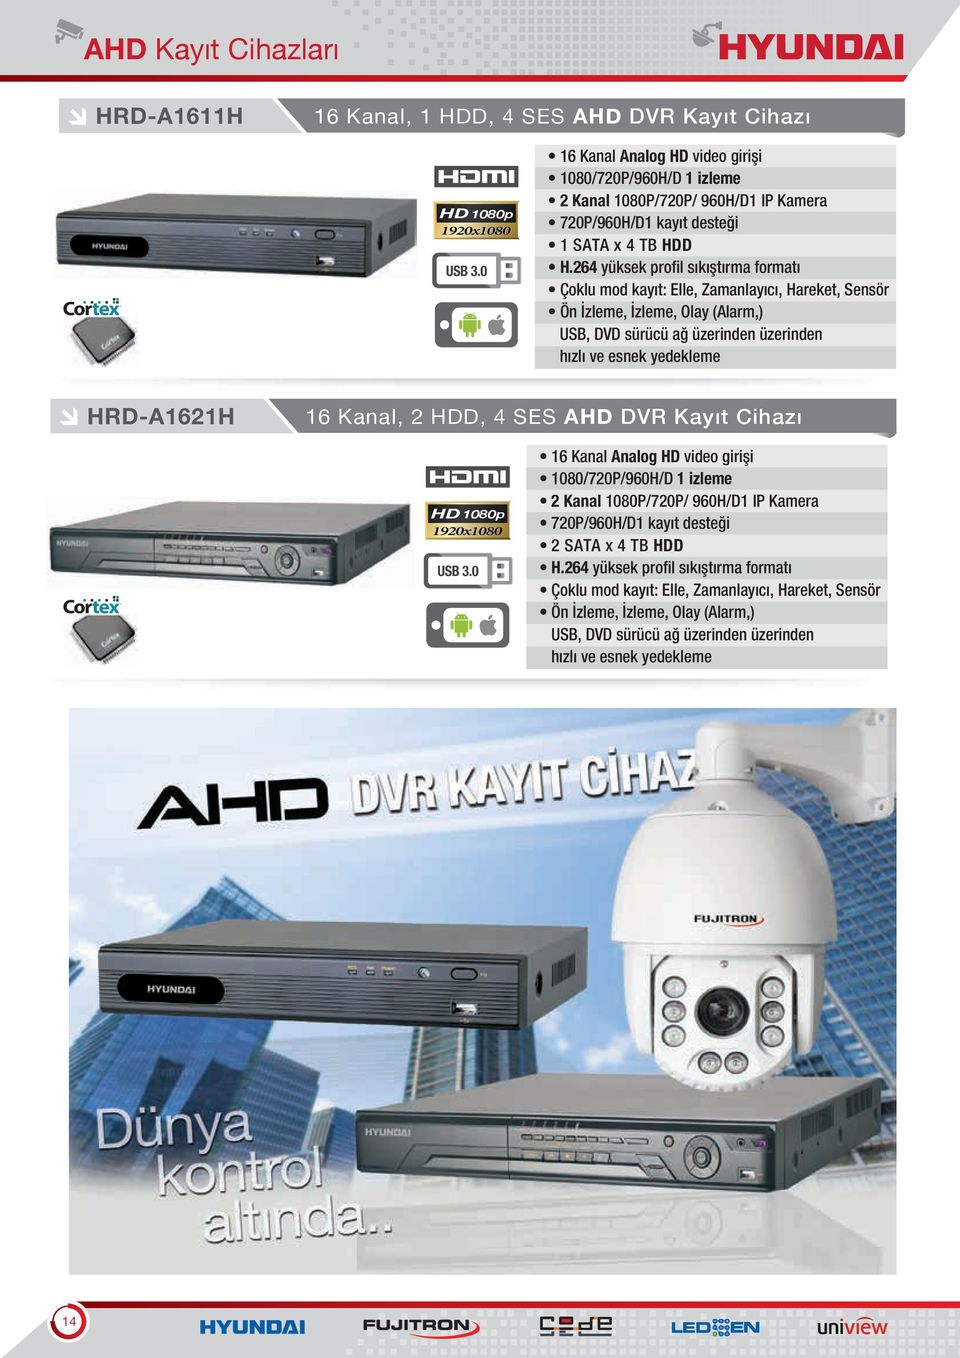 264 yüksek profil sıkıştırma formatı Çoklu mod kayıt: Elle, Zamanlayıcı, Hareket, Sensör Ön İzleme, İzleme, Olay (Alarm,) USB, DVD sürücü ağ üzerinden üzerinden hızlı ve esnek yedekleme HRD-A1621H 16